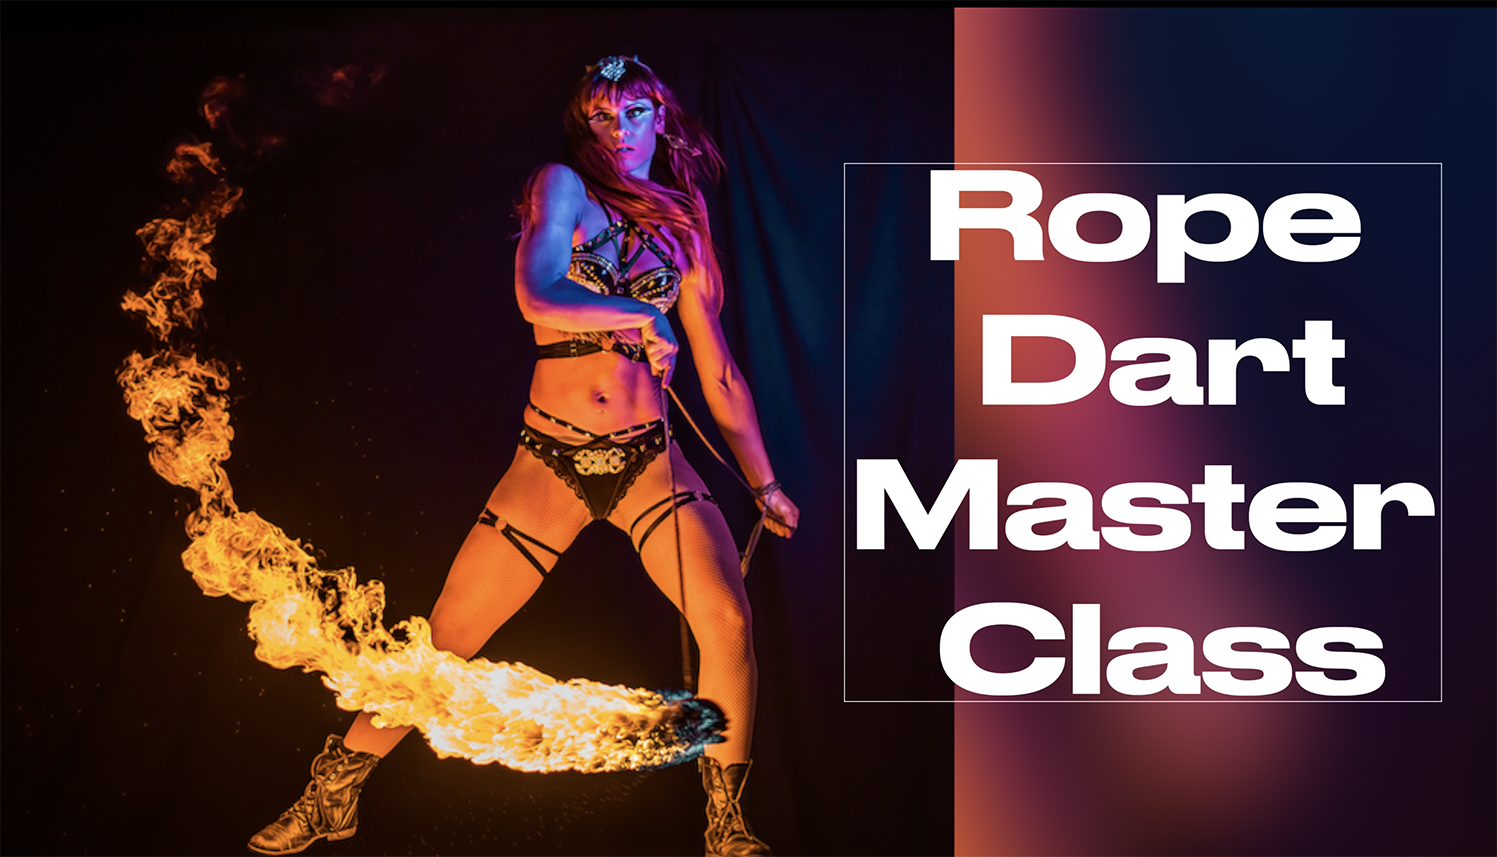 LEARN ROPE DART - FIRE DANCER FLOW MAYHEM